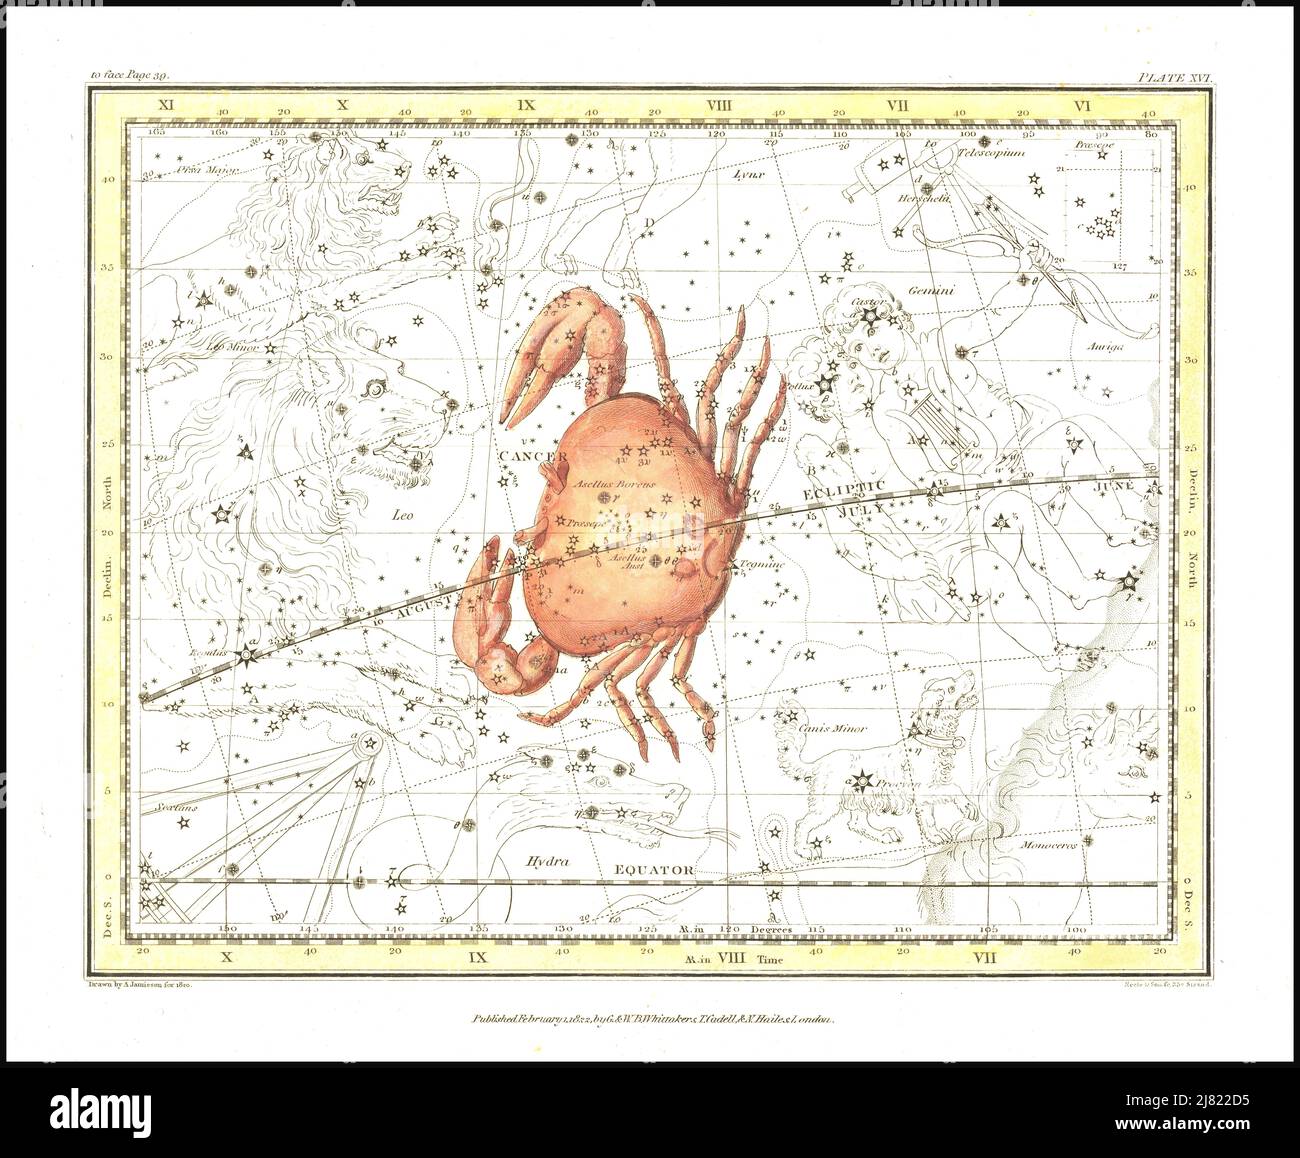 Alexander Jamieson - cancer le crabe - planche 11 d'Un atlas céleste comprenant une exposition systématique des cieux - 1822 Banque D'Images